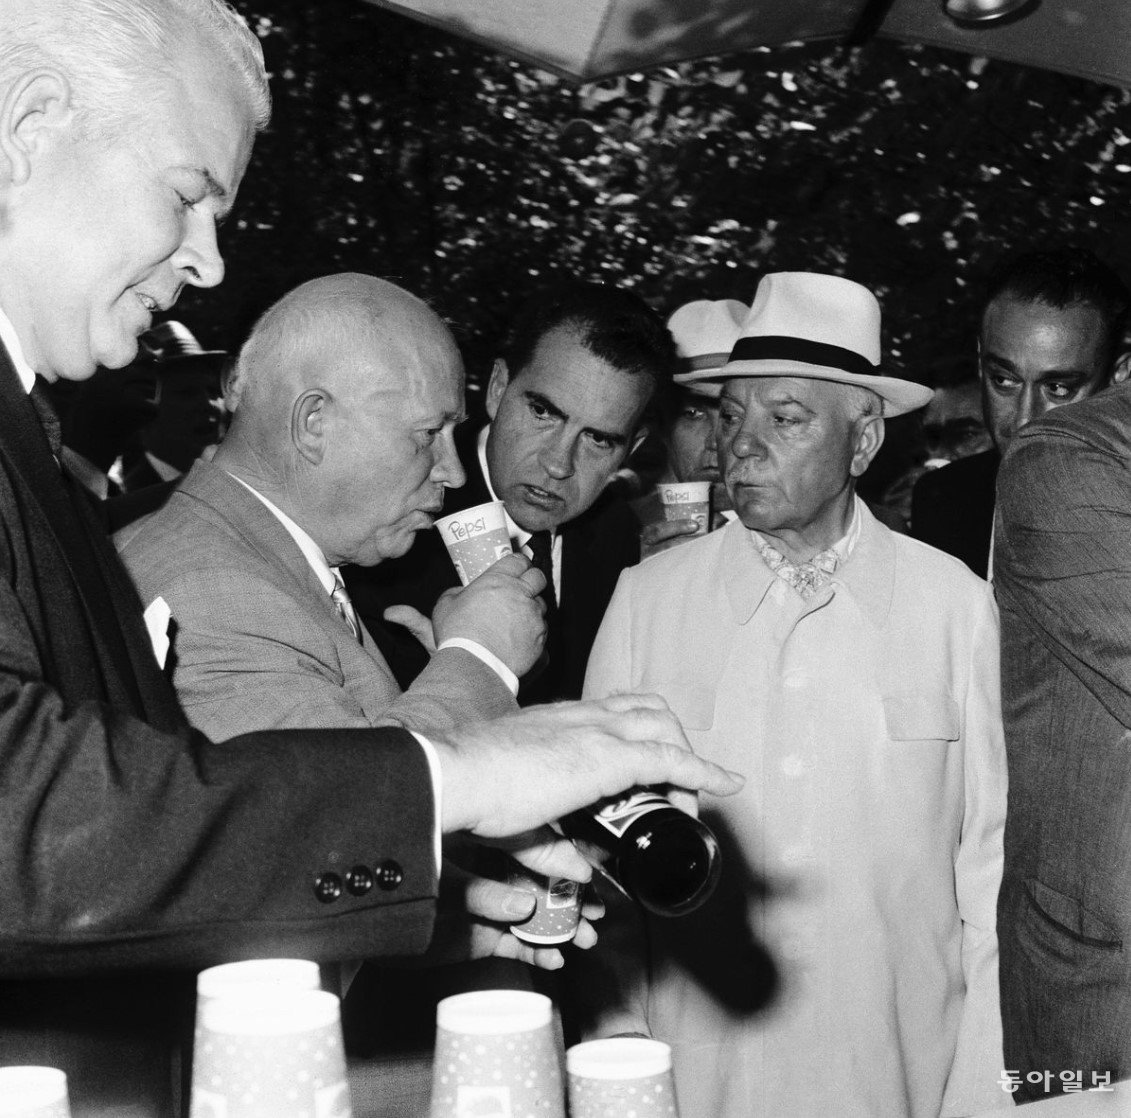 1959년 한 행사장에서 당시 소련 지도자인 니키타 흐루쇼프 공산당 총리·서기장(왼쪽 두 번째)이 펩시를 맛보고 있다. 1974년 펩시코는 소련에서 콜라를 팔기 시작했다. 펩시는 소련에서 판매된 최초의 ‘자본주의’ 제품으로 알려져 있다.